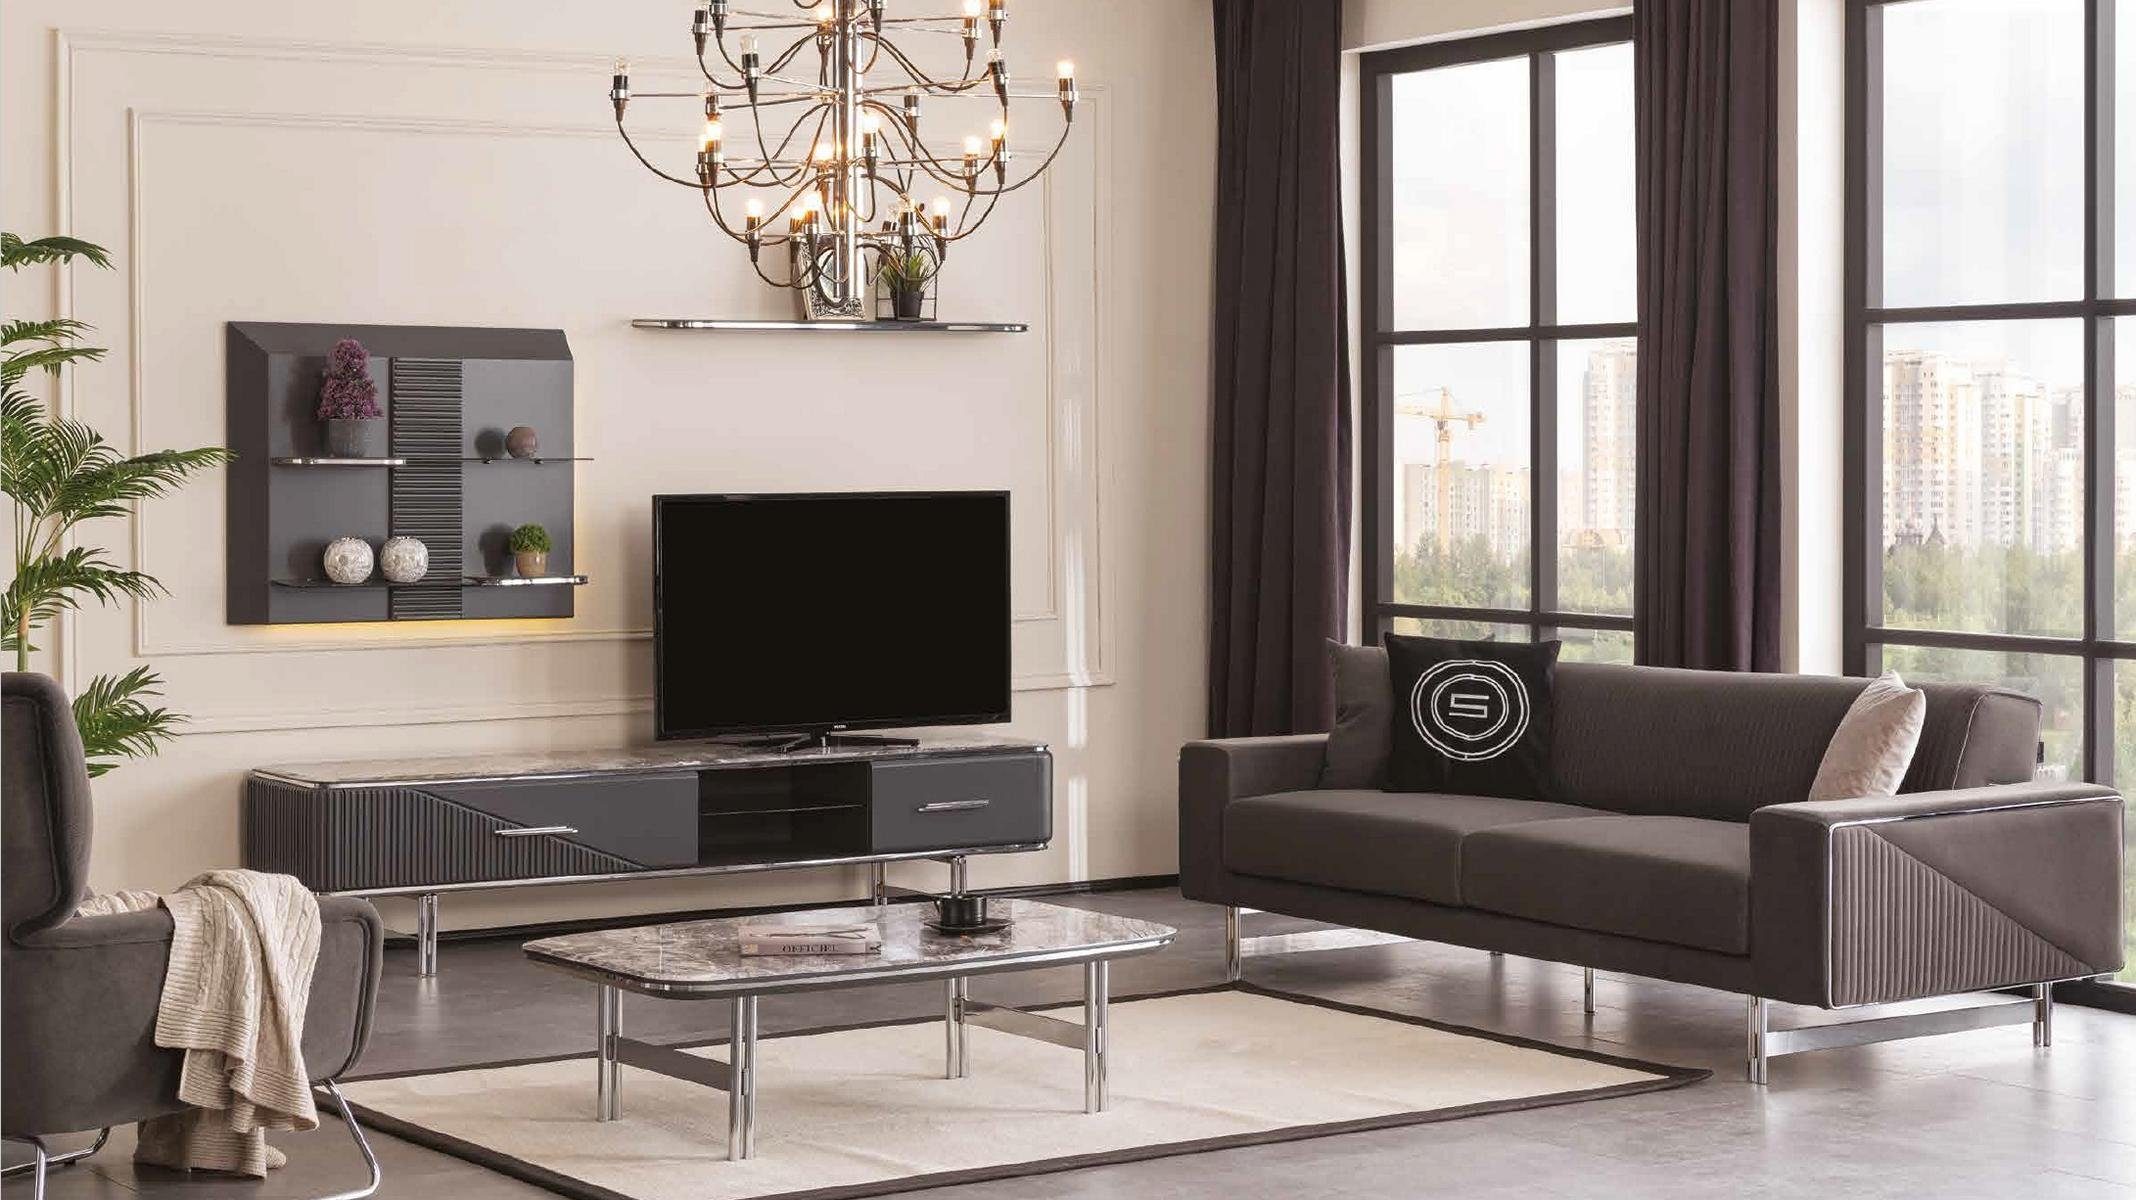 JVmoebel Wohnzimmer-Set, Luxus Wohnzimmer Sofa 3 Sitzer Couchtisch rtv Regale Lowboard Design